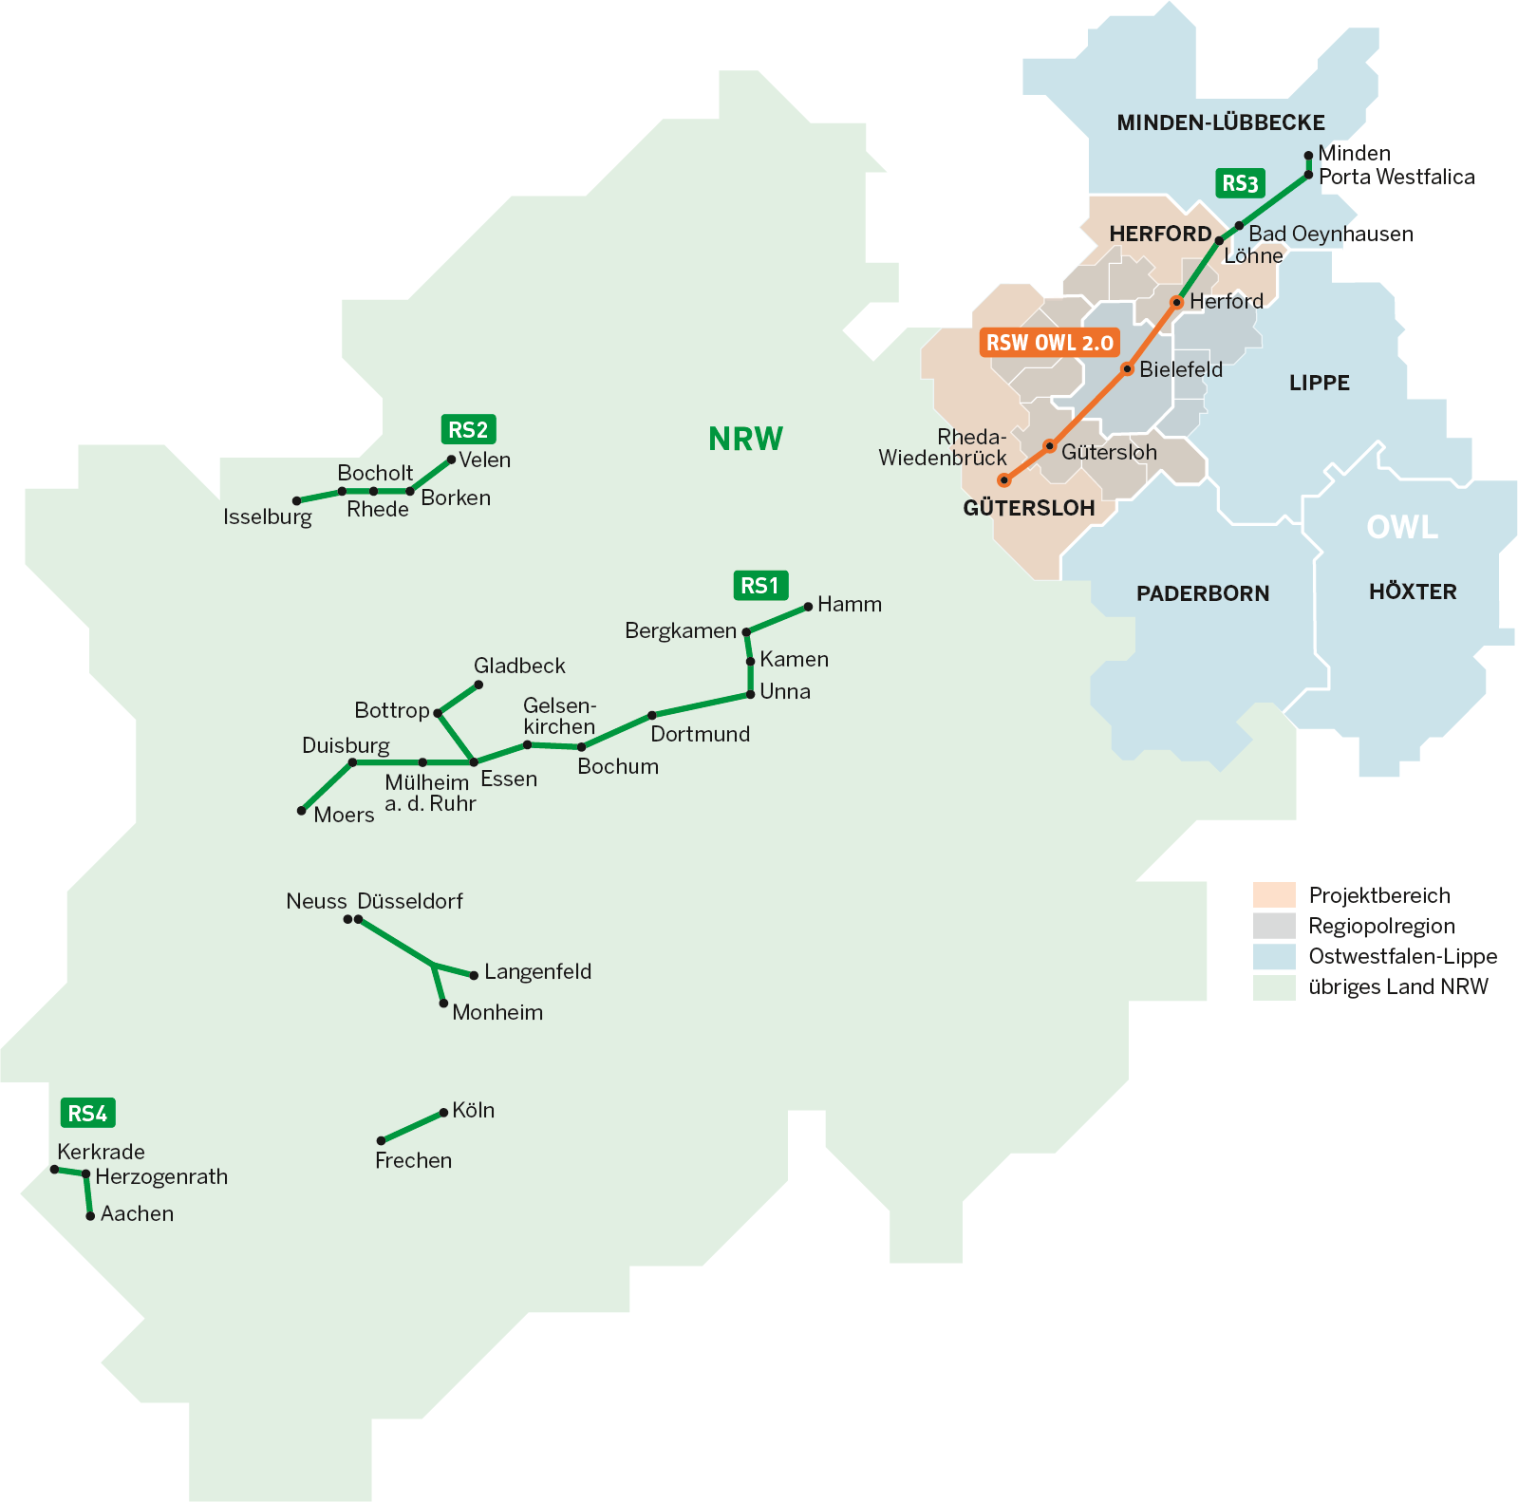 Aktuelle Radschnellwegprojekte in Nordrhein-Westfalen. Der Radschnellweg RS3 wird den Wirtschaftsraum von OWL erschließen. (Design-Gruppe)